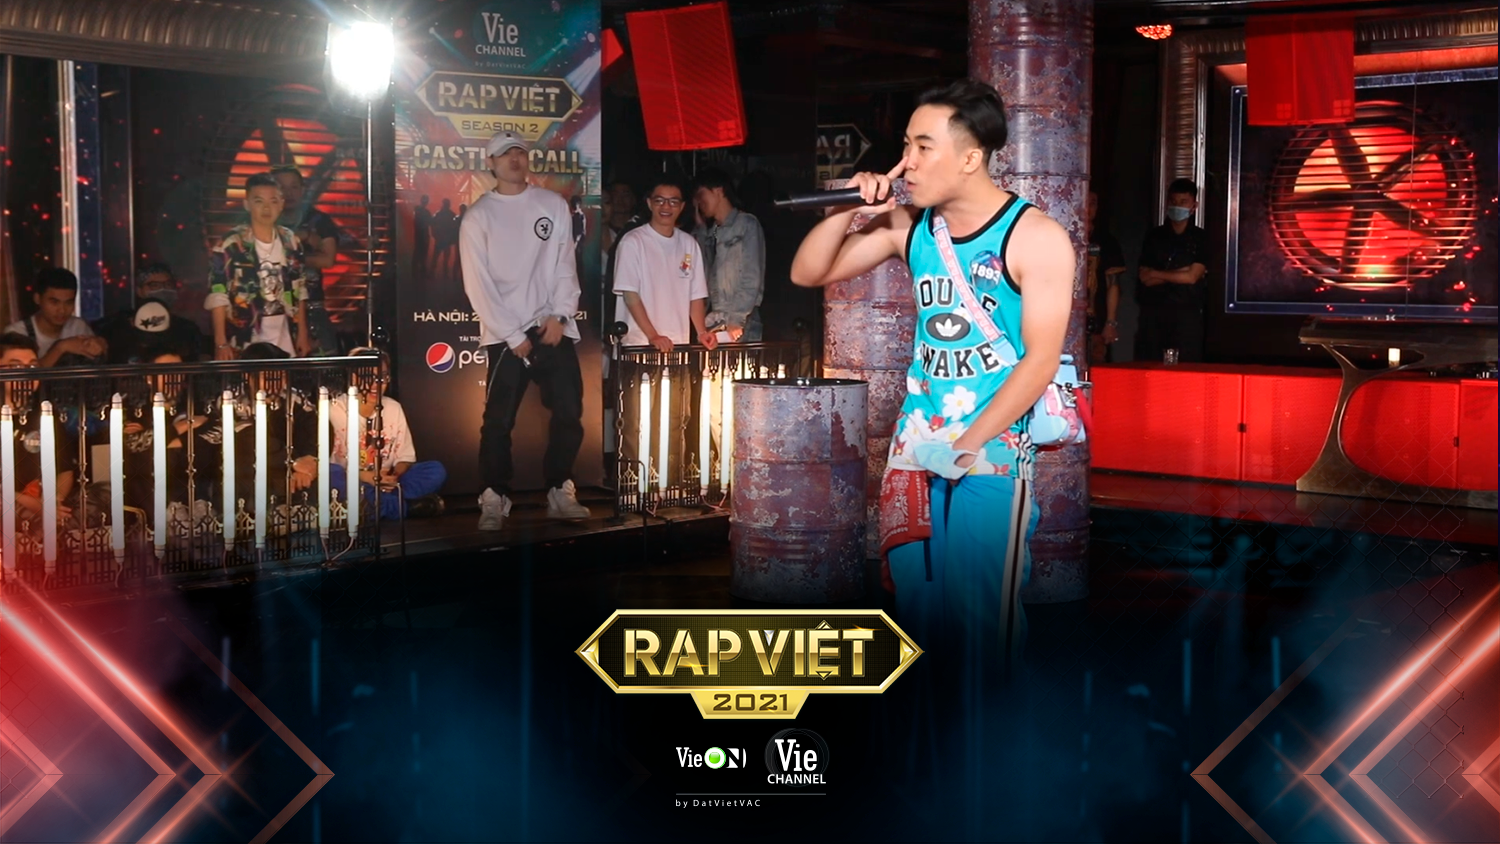 Rap Việt đang làm mưa làm gió trong làng nhạc Việt với những bài hát chất lượng và sáng tạo. Hãy cùng đến và thưởng thức những hình ảnh về sự phát triển của thể loại này trong nước.